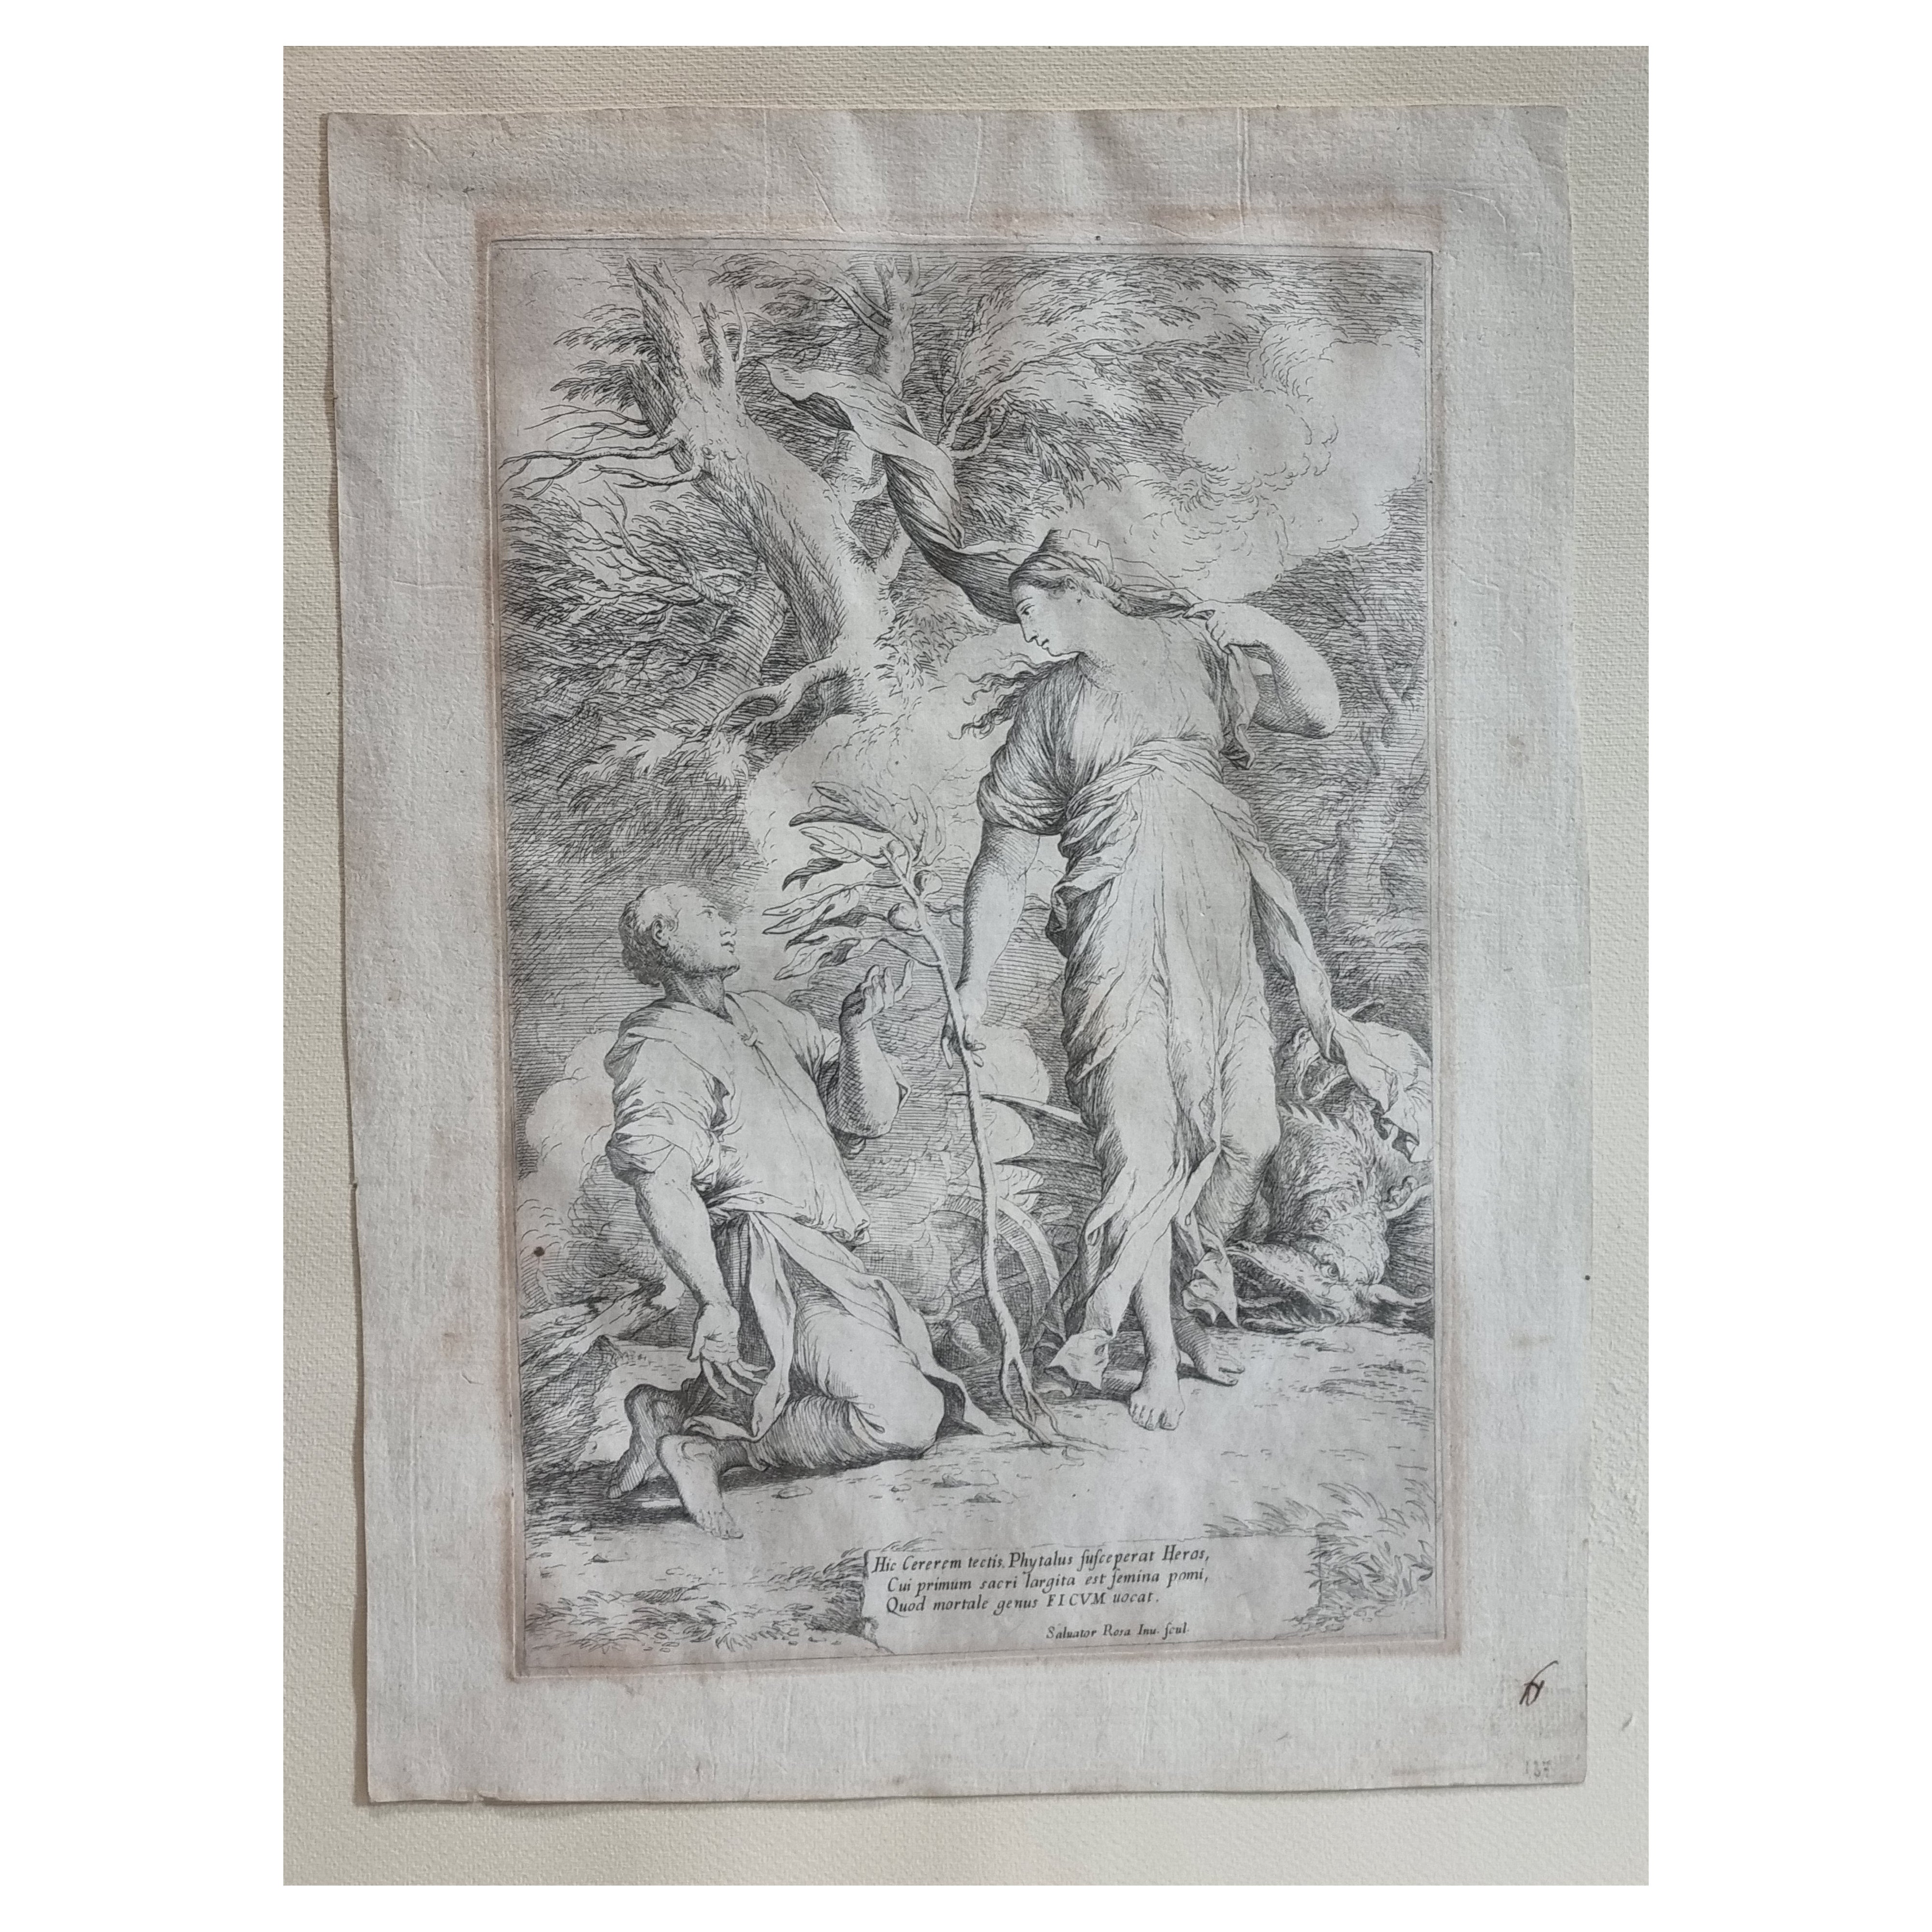 Gravure et pointe sèche du 17e siècle « Ceres and Phytalus » de Salvator Rosa, 1662